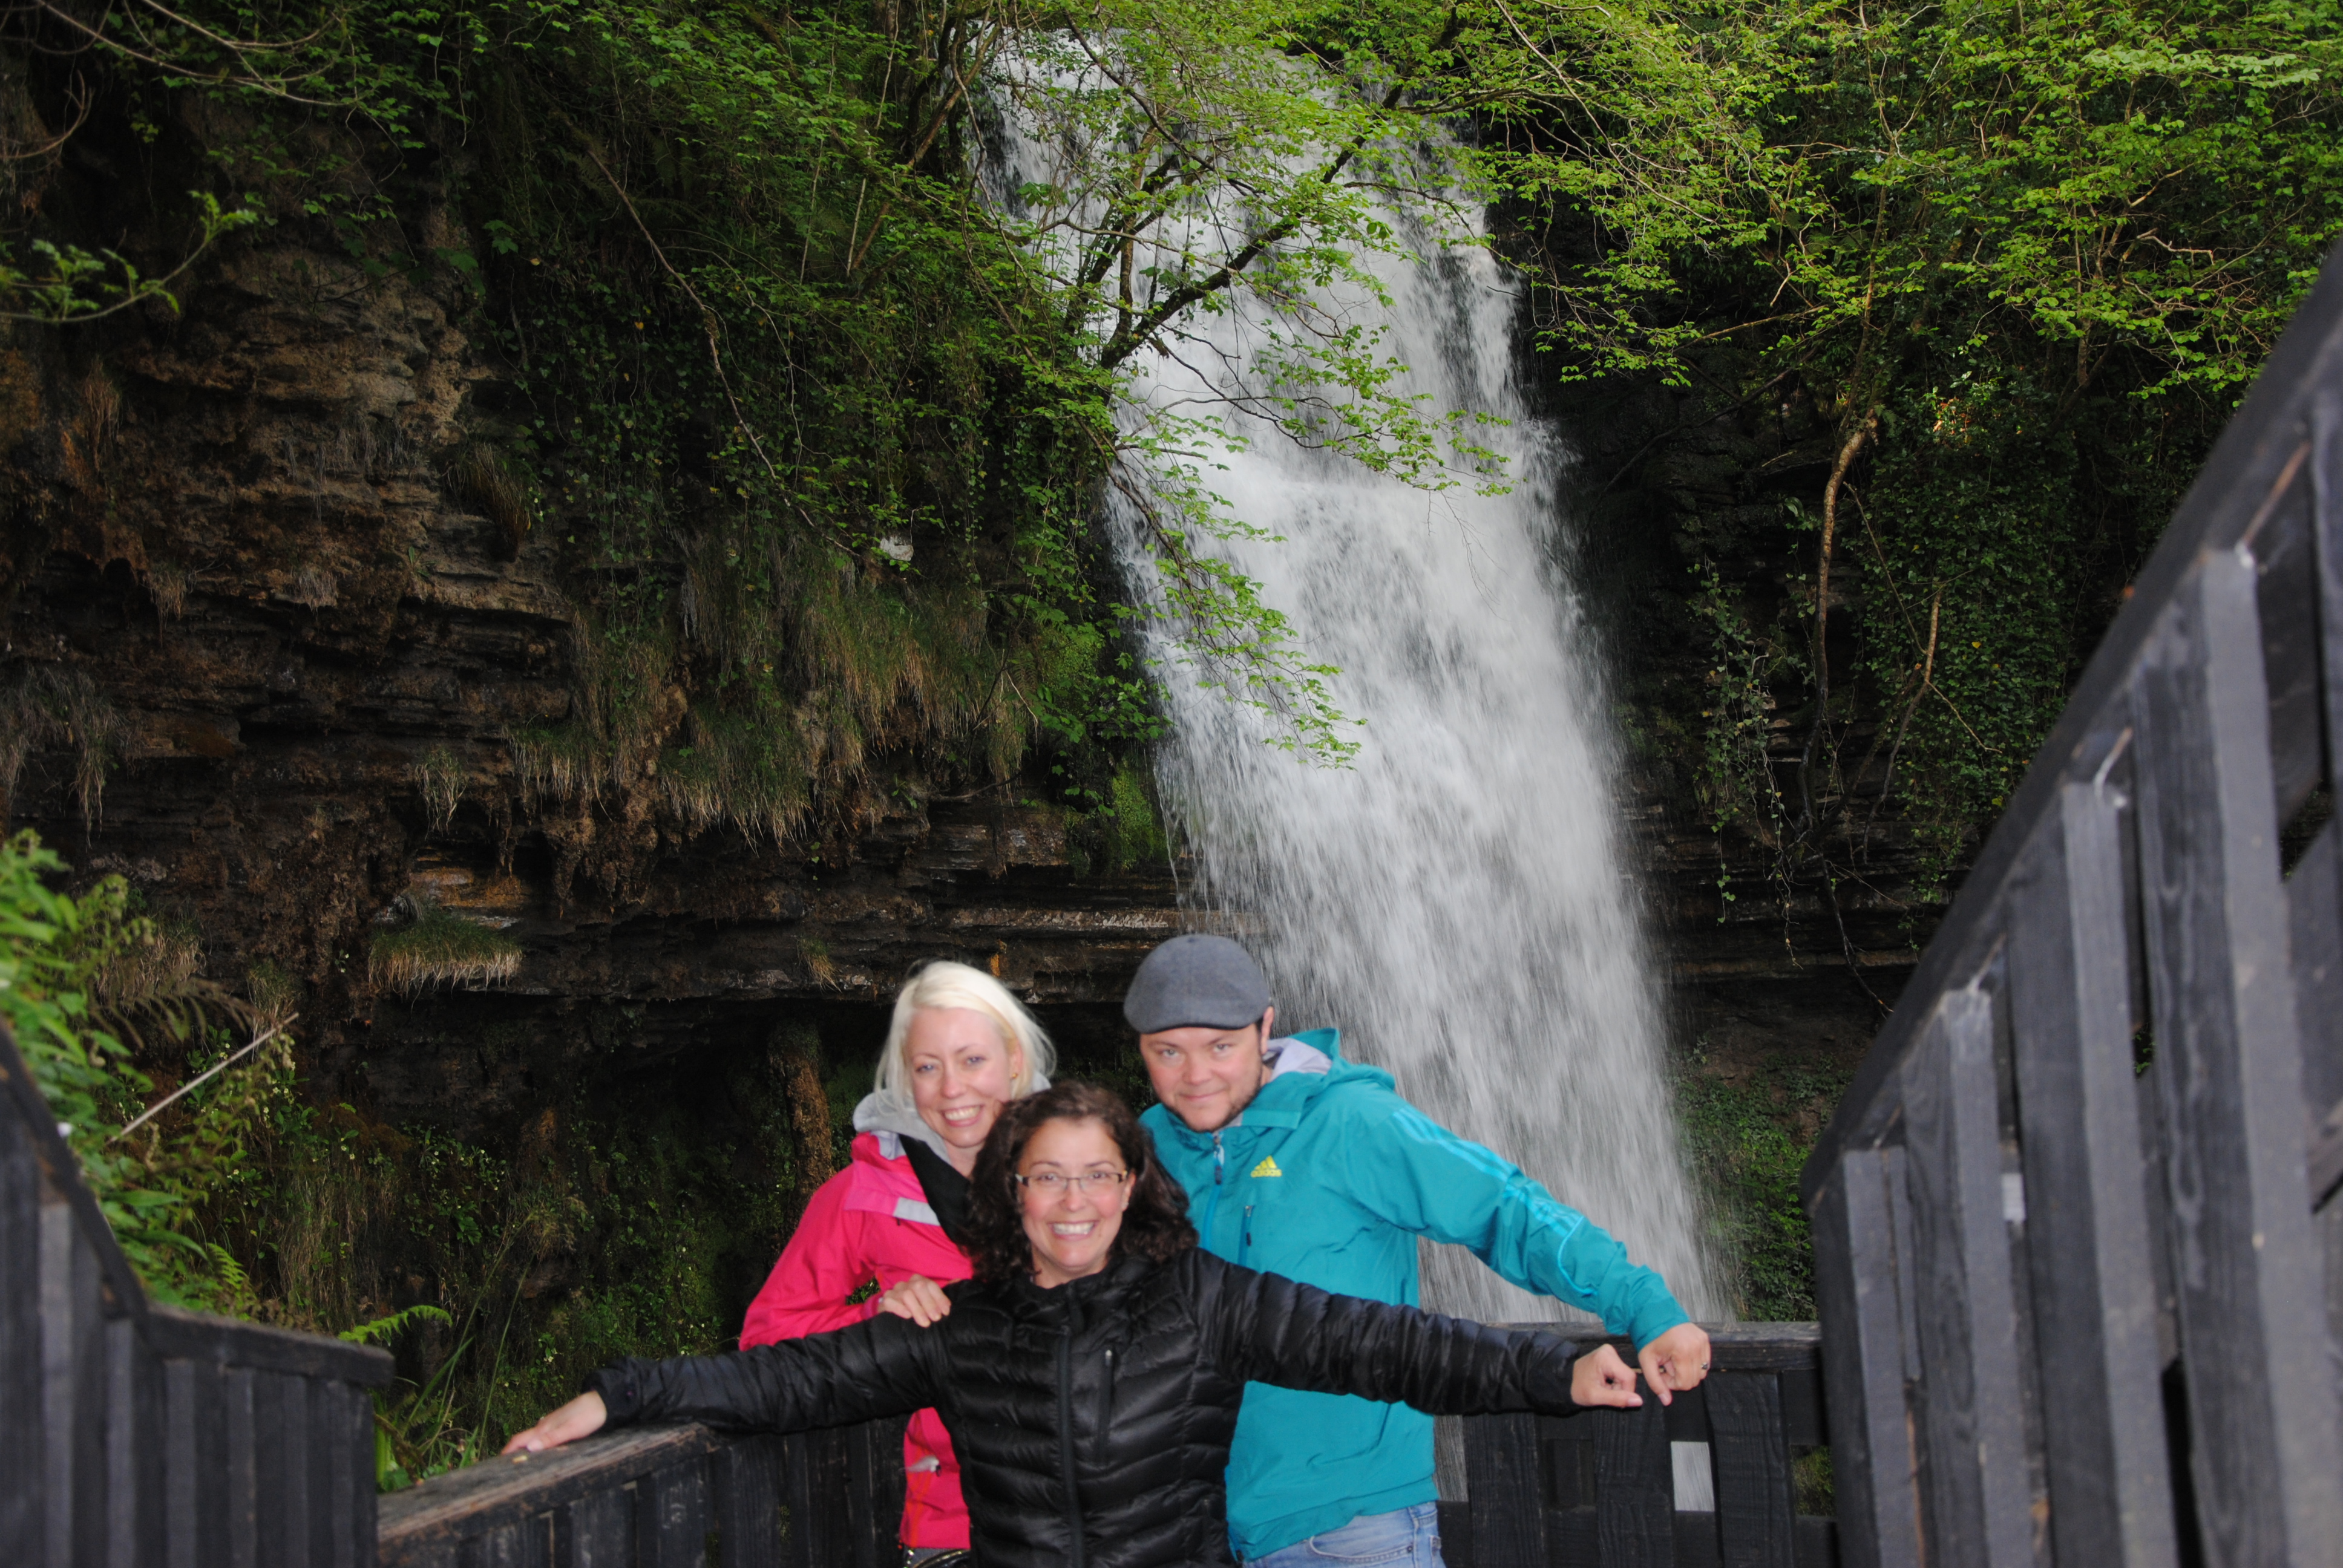 Waterfall, Ireland